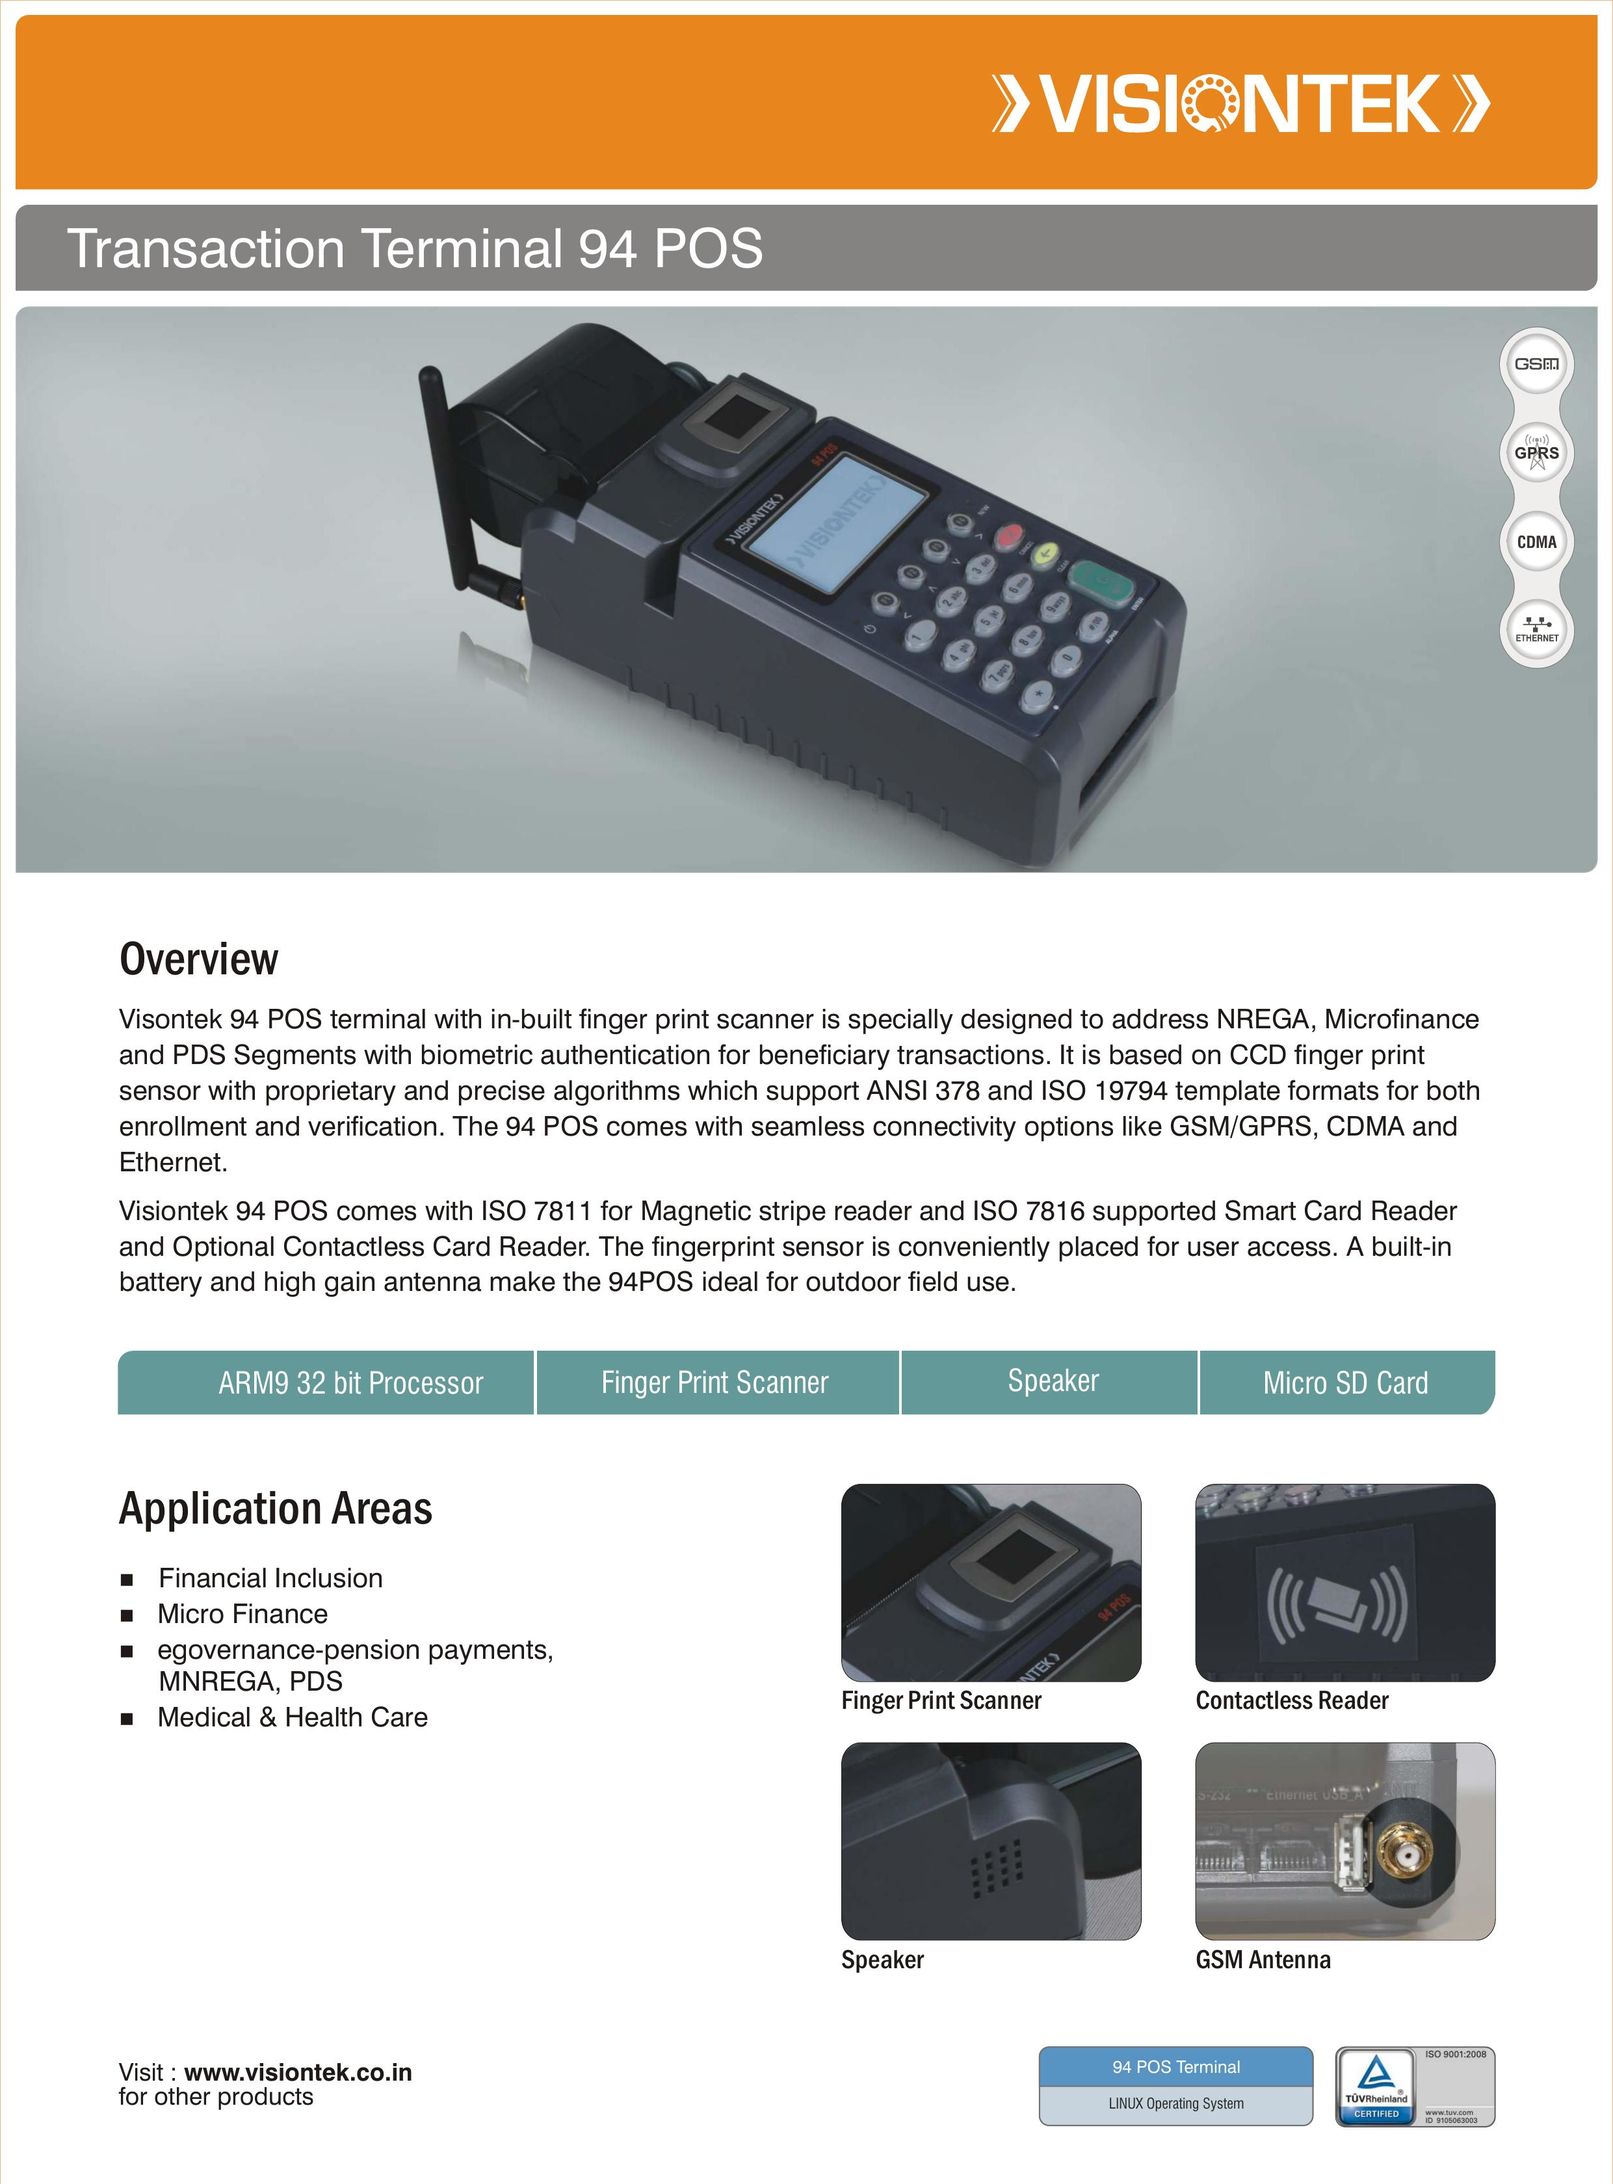 VisionTek ISO 7811 Credit Card Machine User Manual